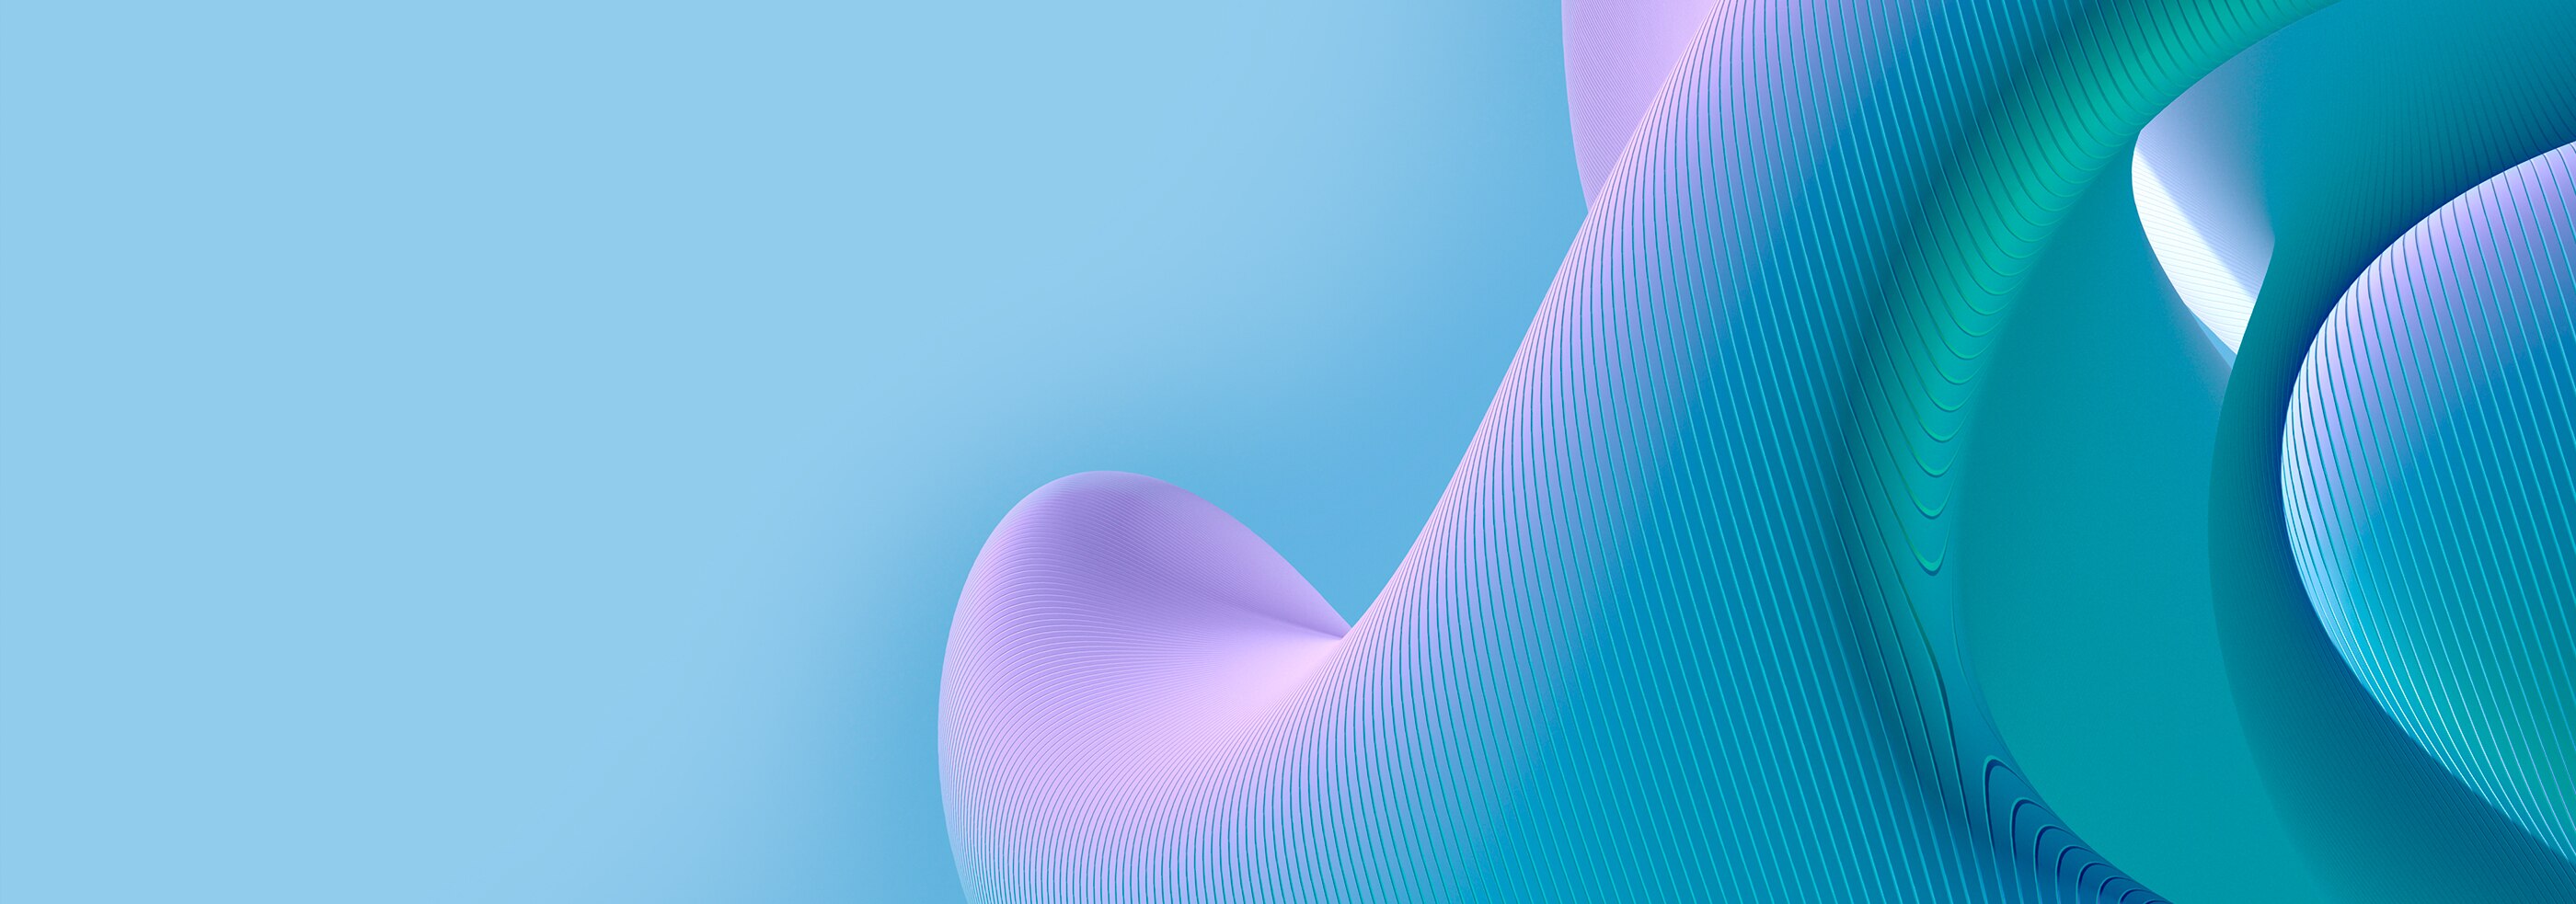 青と紫の表面に3Dの曲線パターン